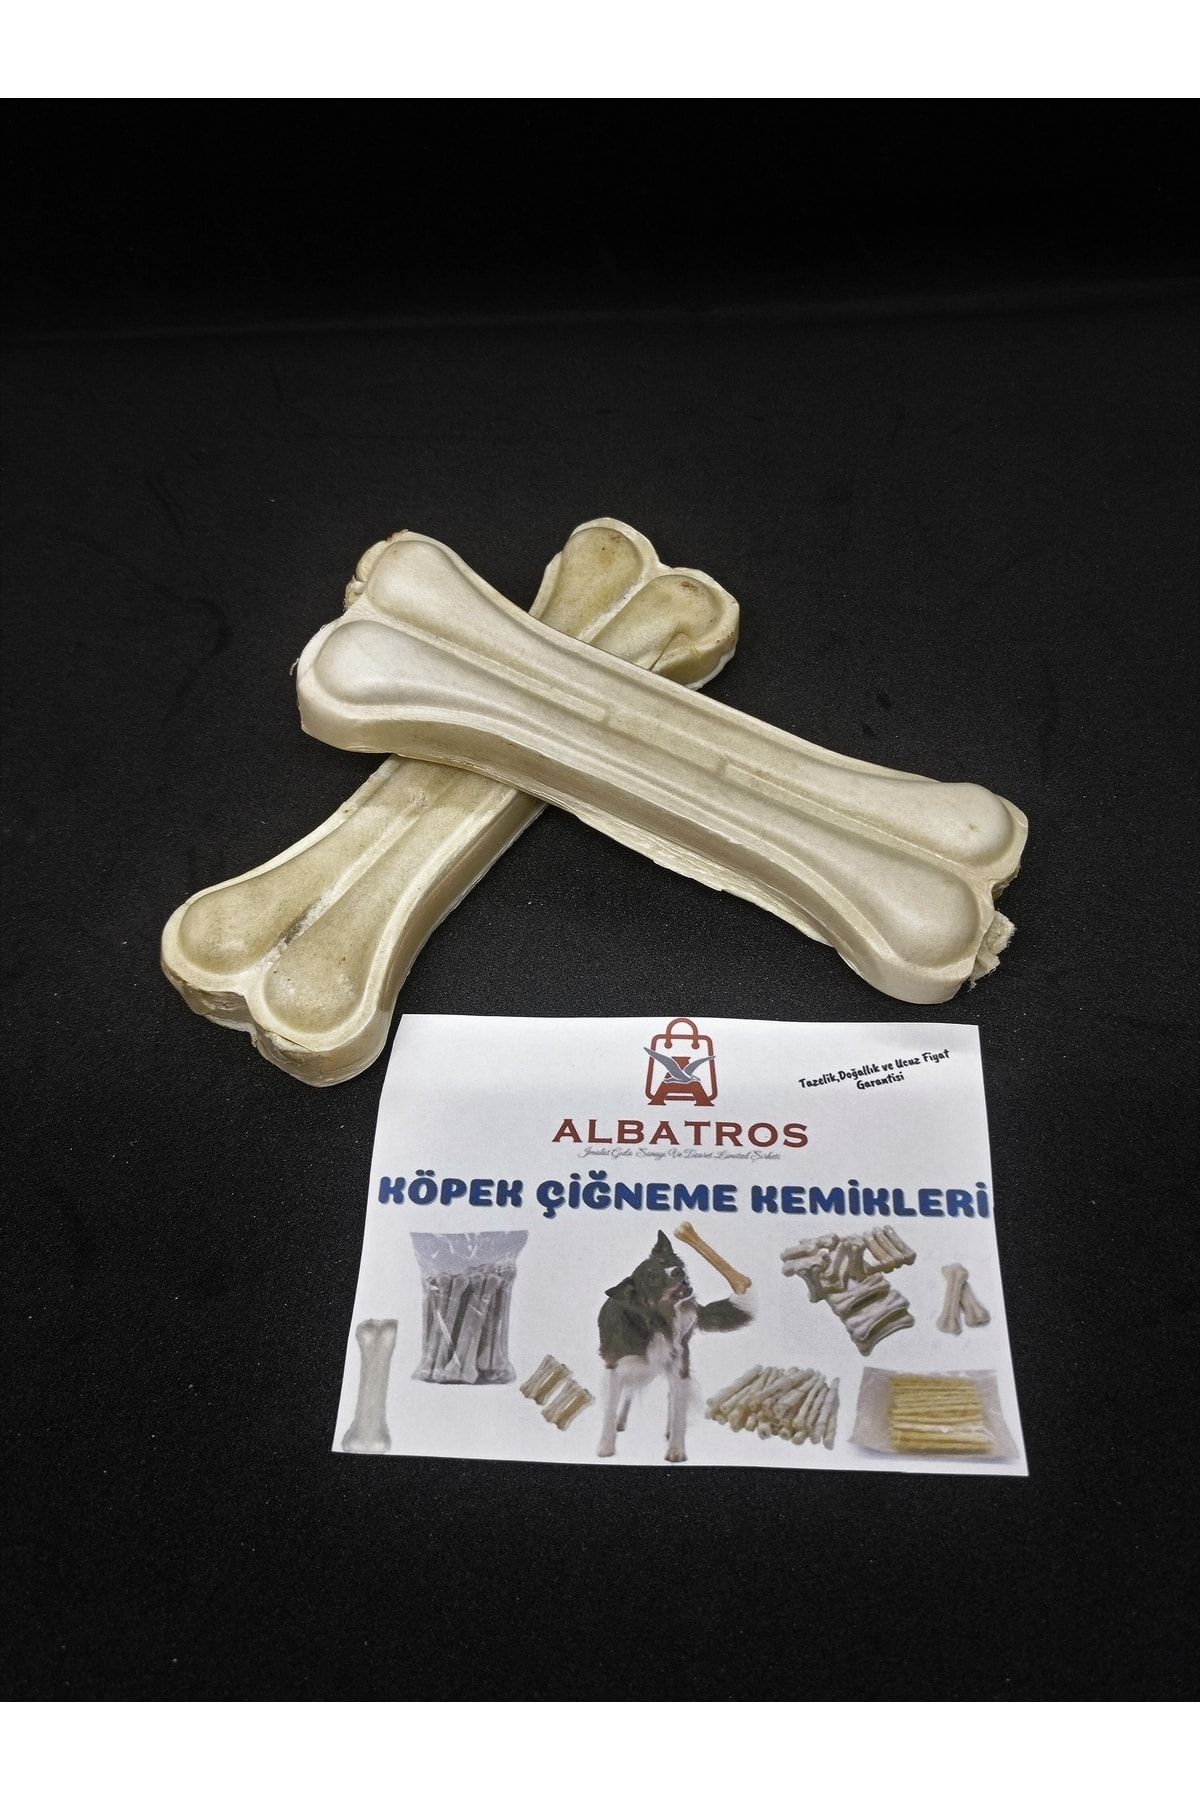 Albatros 12 Cm 2 Adet 50-60gr Köpek Çiğneme Kemiği ,diş Ve Ağız Temizleme,oyun Kemiği,pres Kemik